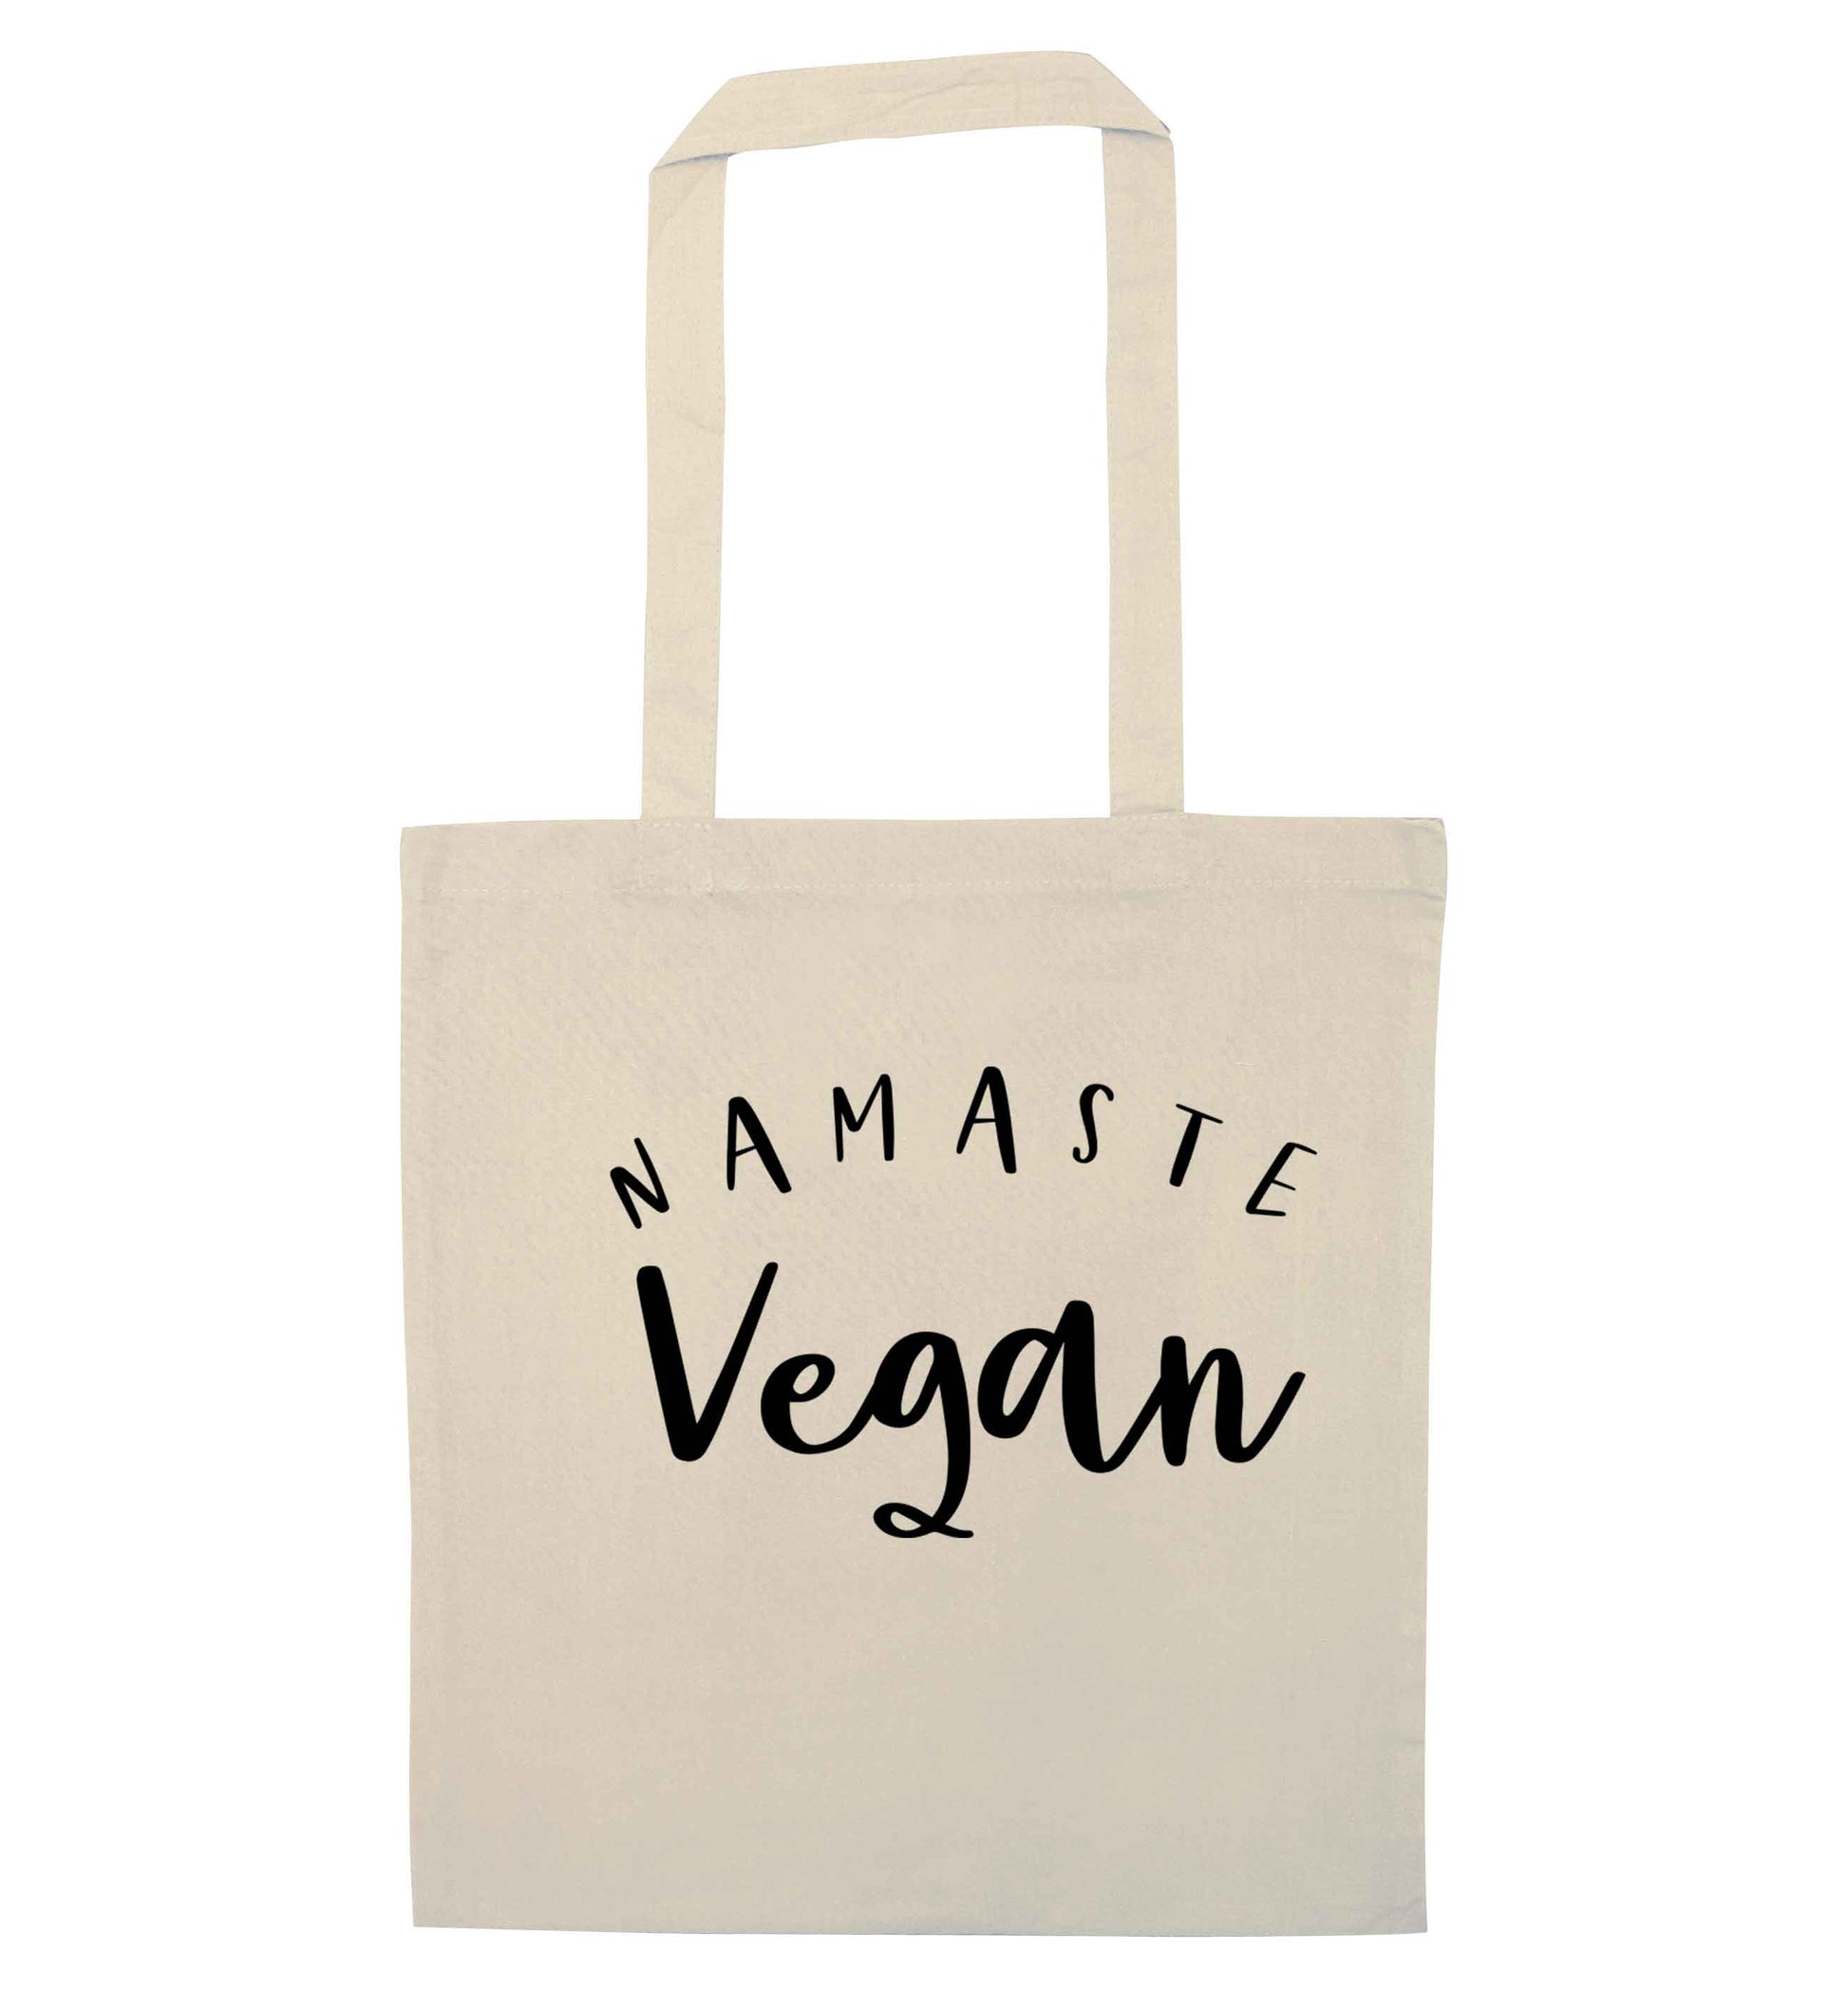 Namaste vegan natural tote bag